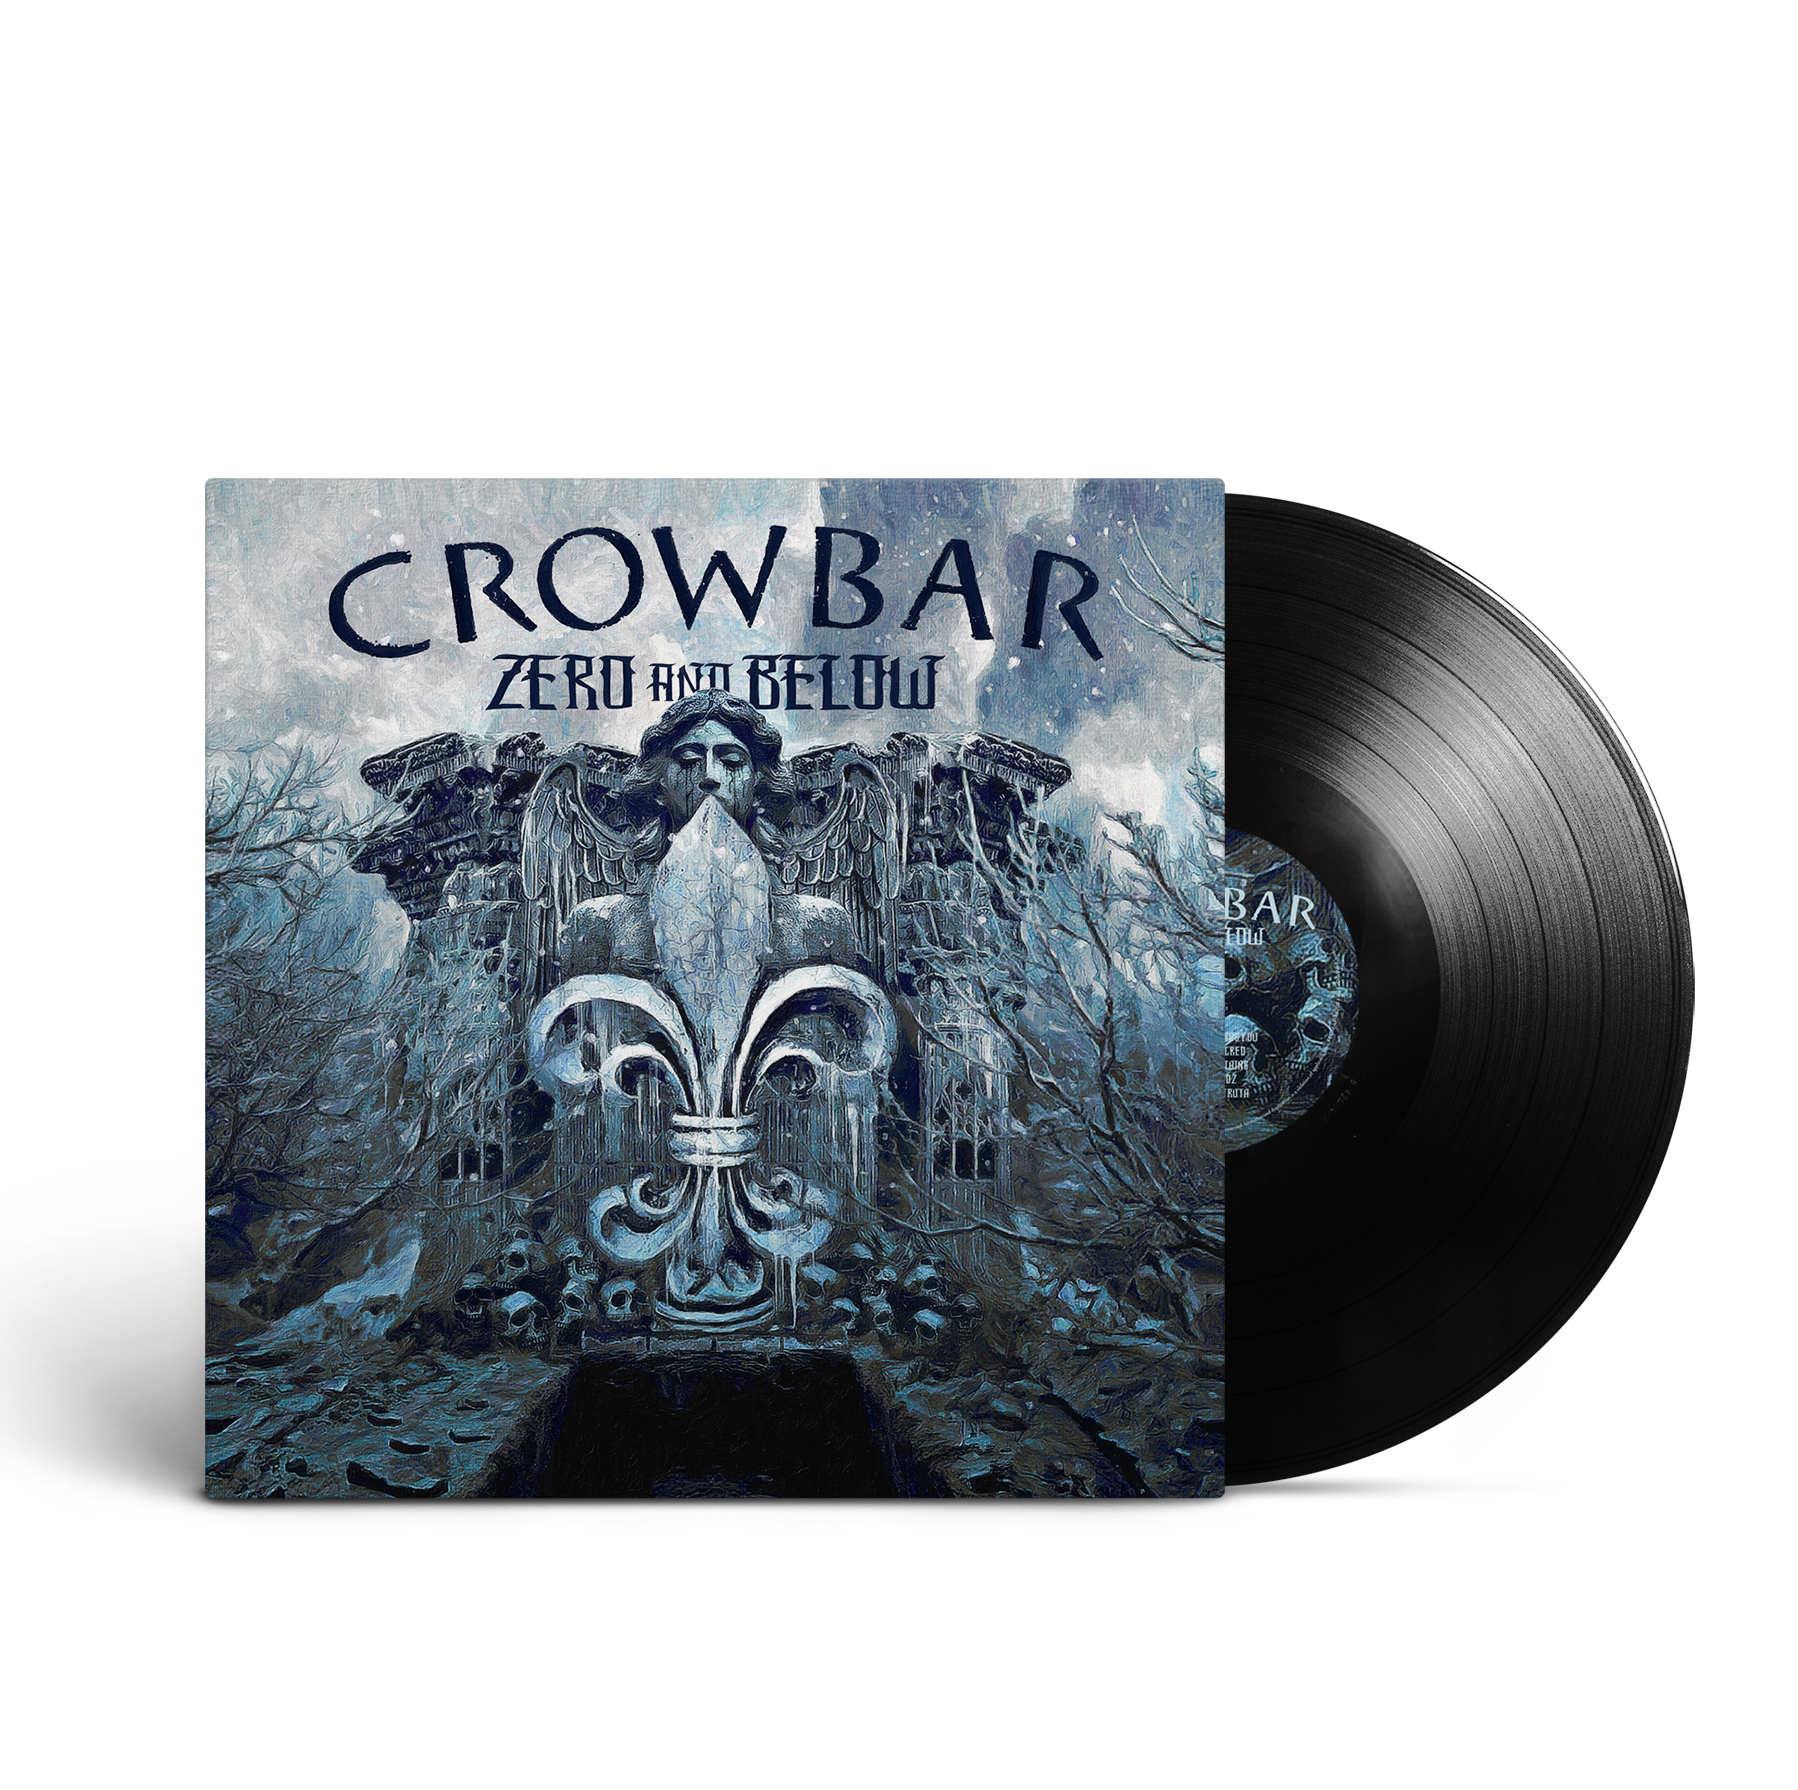 Crowbar  - Zero And Below Black Vinyl